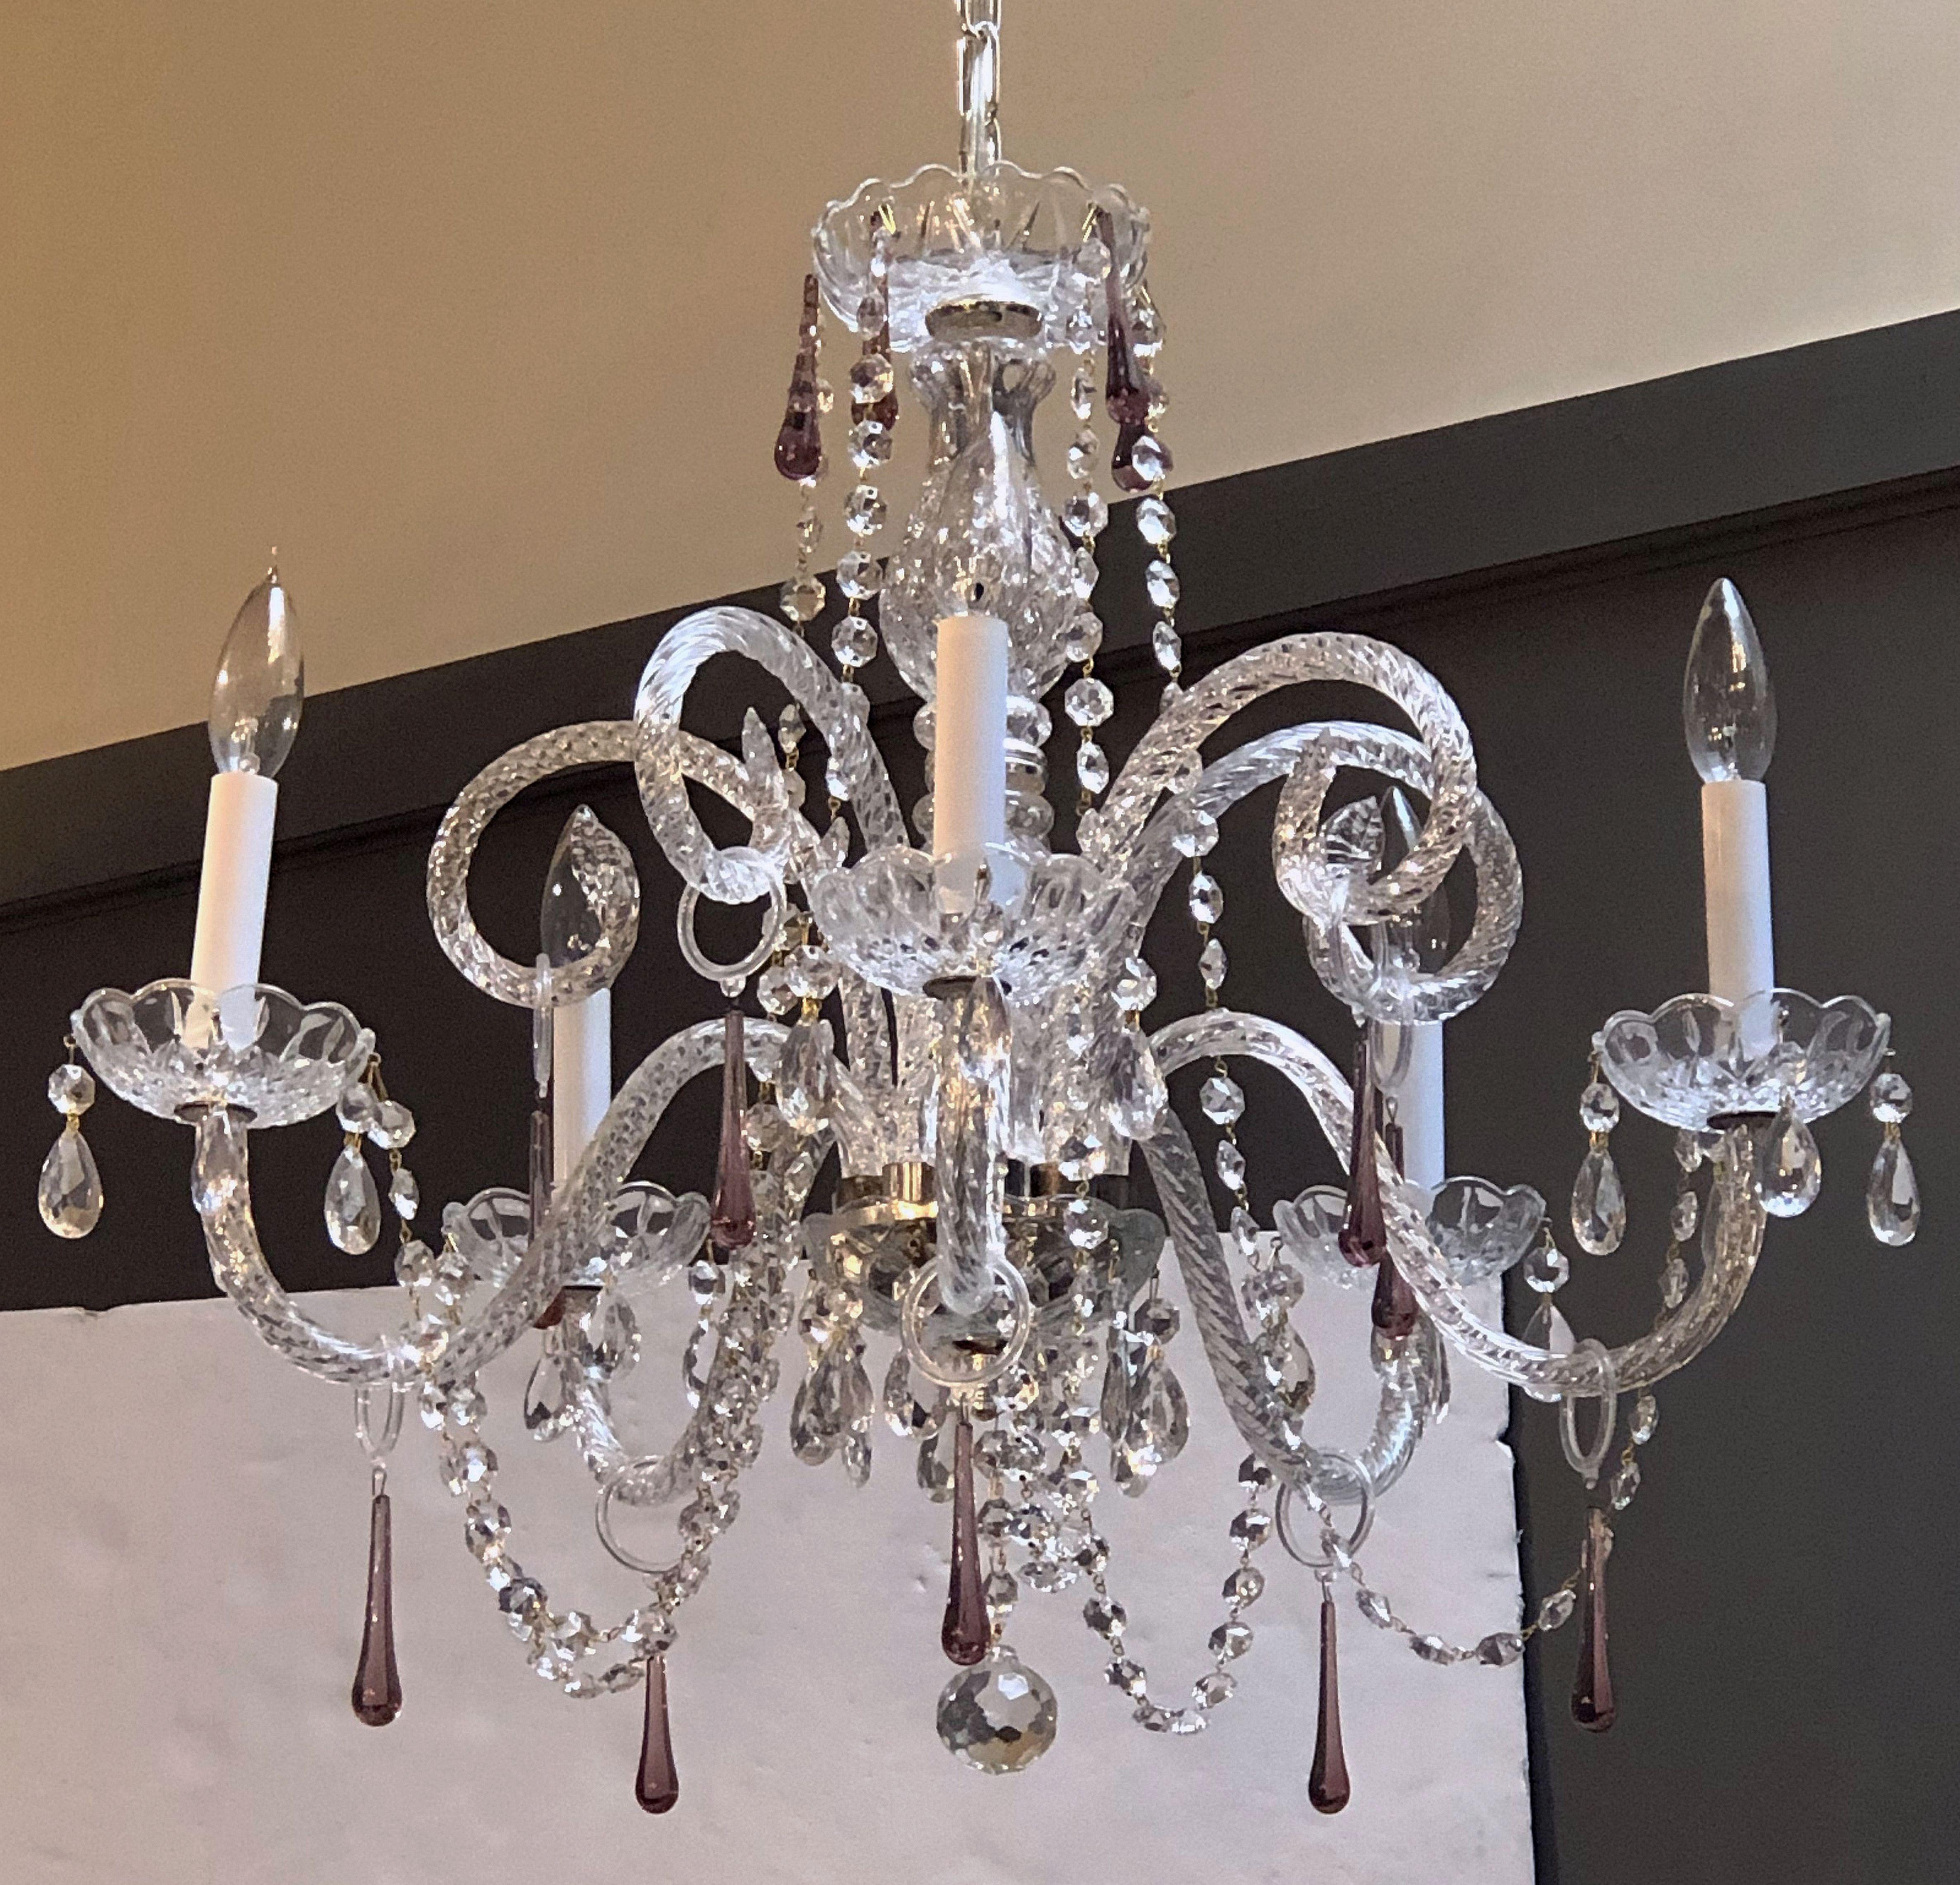 20th Century Italian Five-Light Venetian Crystal Drop Chandelier or Hanging Fixture (Dia 24